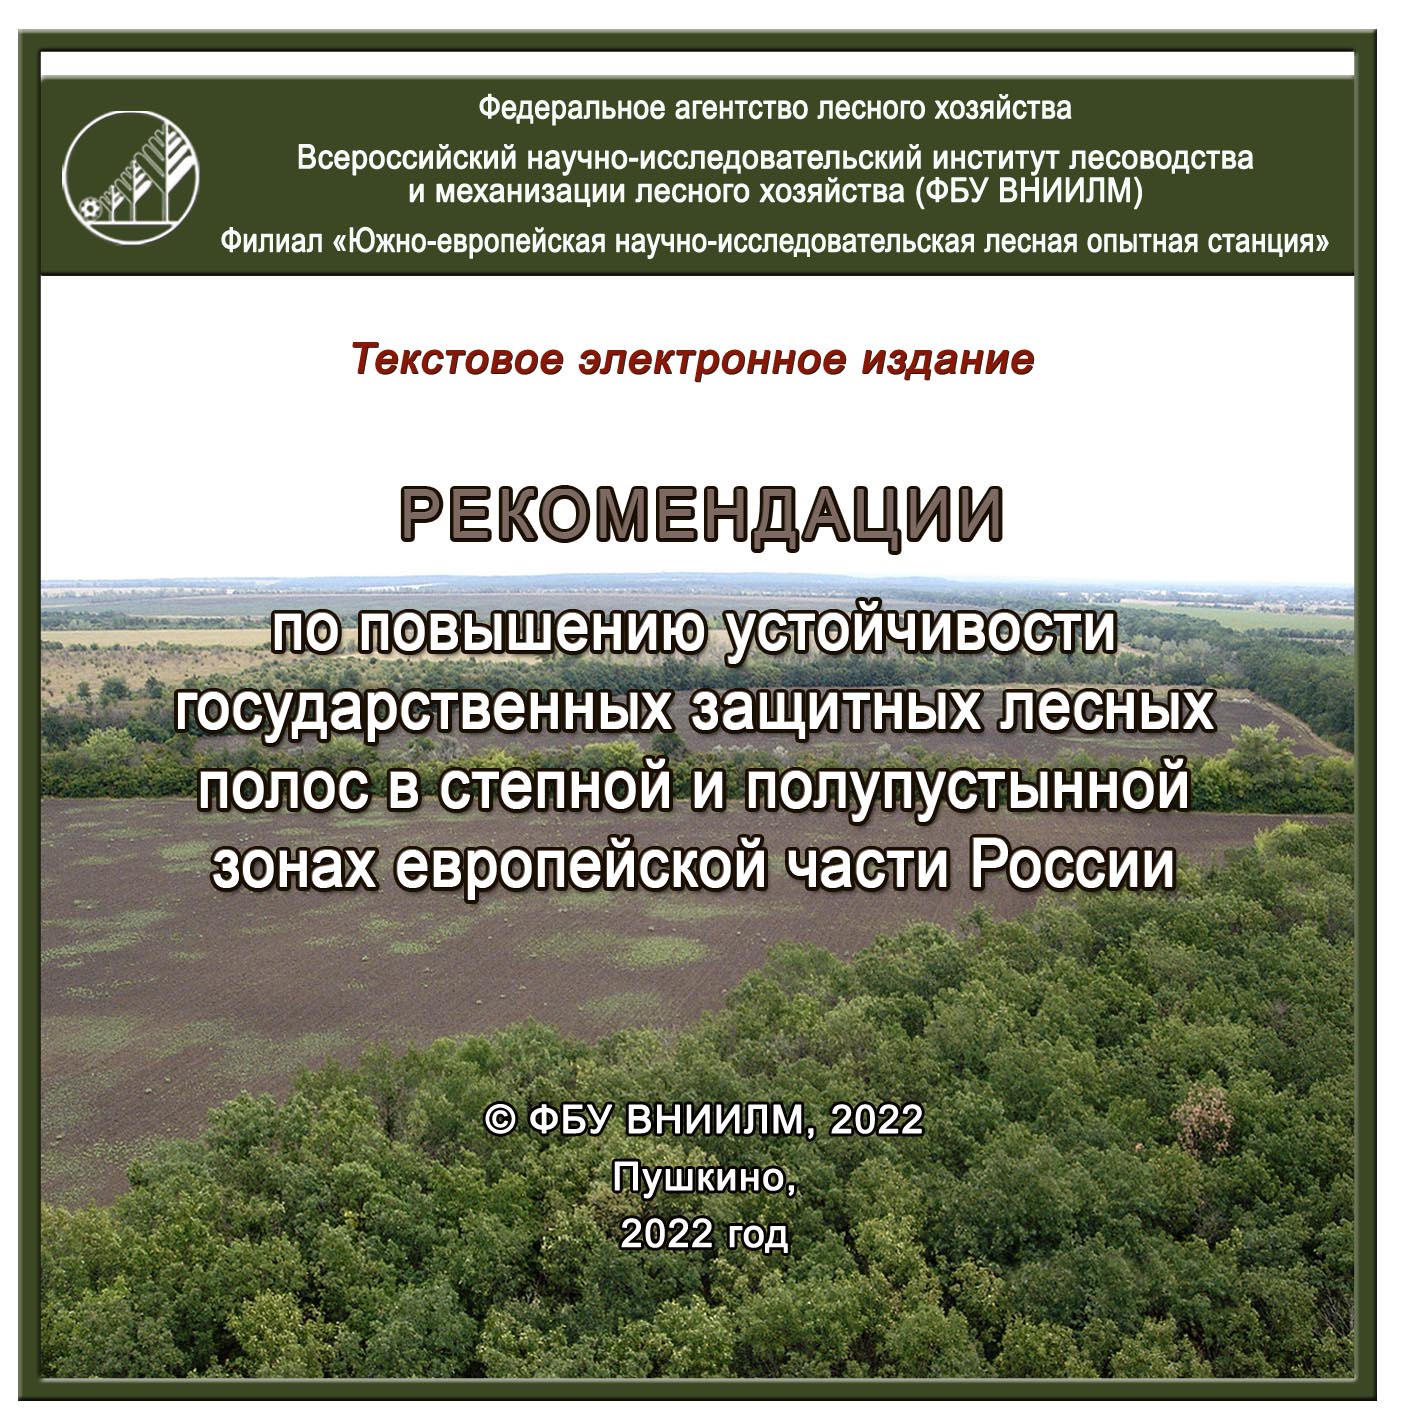 Рекомендации по повышению устойчивости государственных защитных лесных полос в степной и полупустынной зонах европейской части России